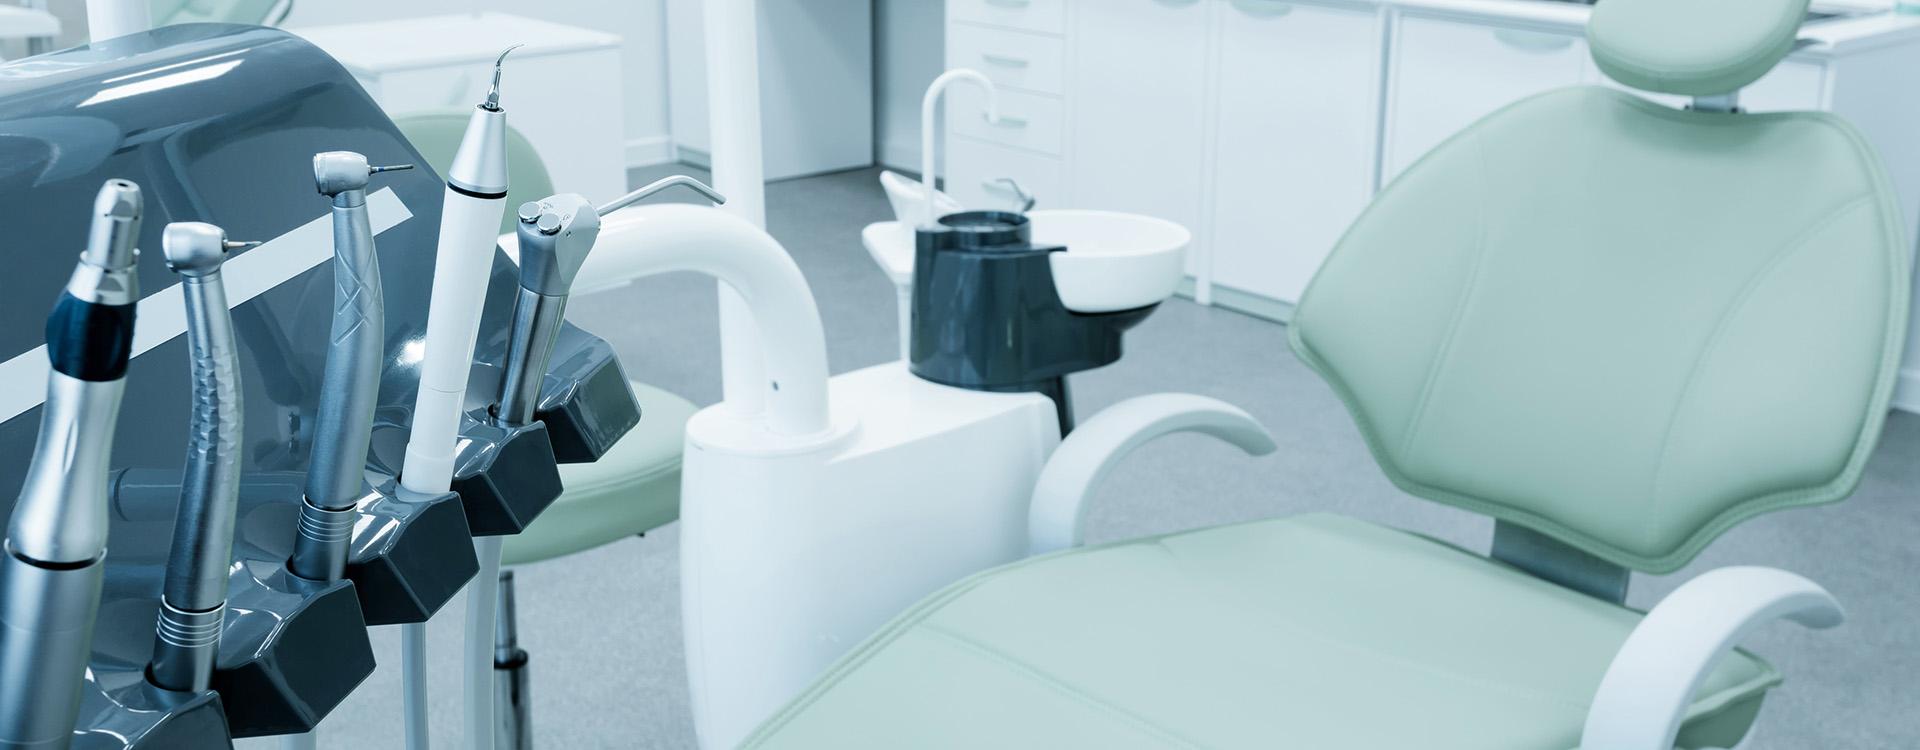 现代化的牙科诊所和设备